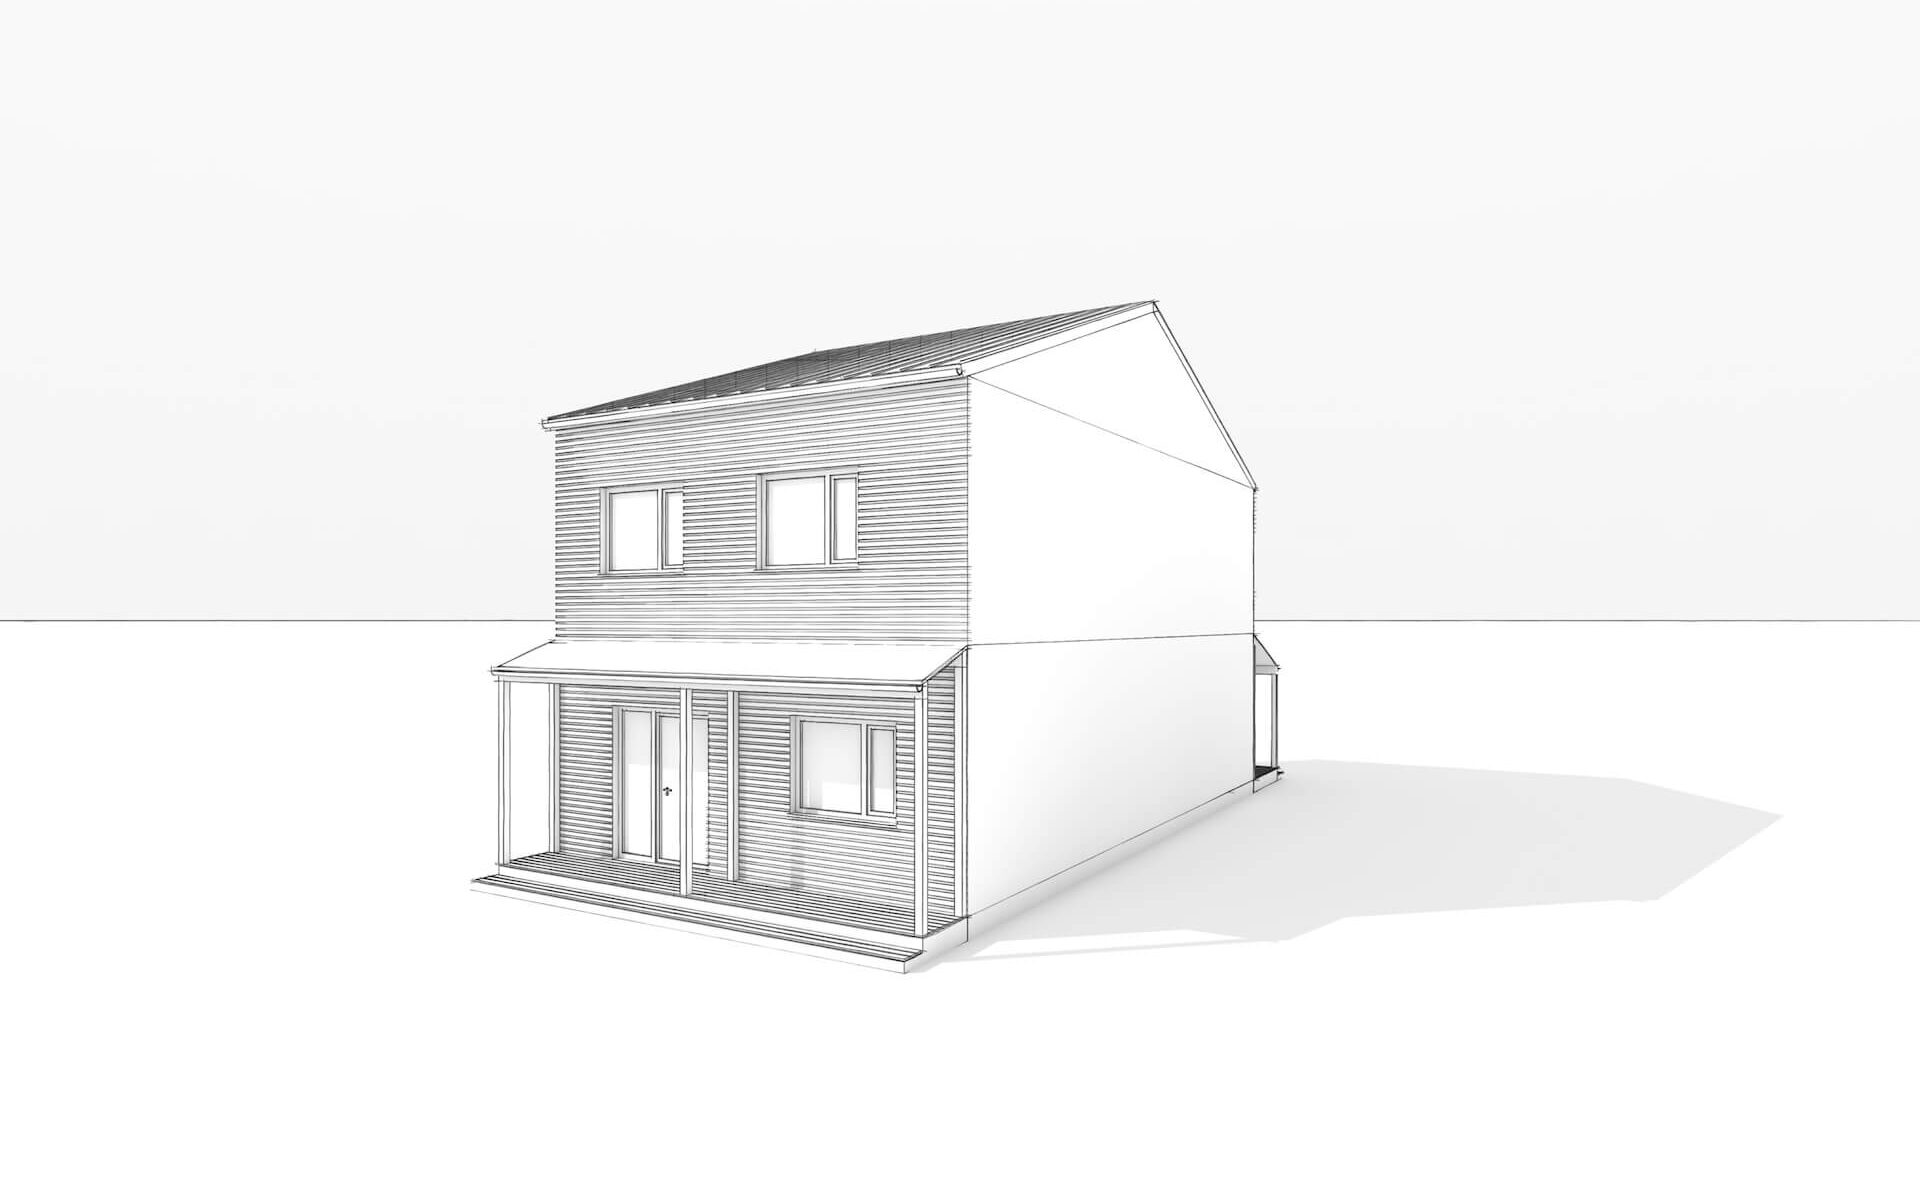 Konzeptstudie und Variantenuntersuchung für eine Wohnsiedlung mit Holzbau in Revelstoke Kanada